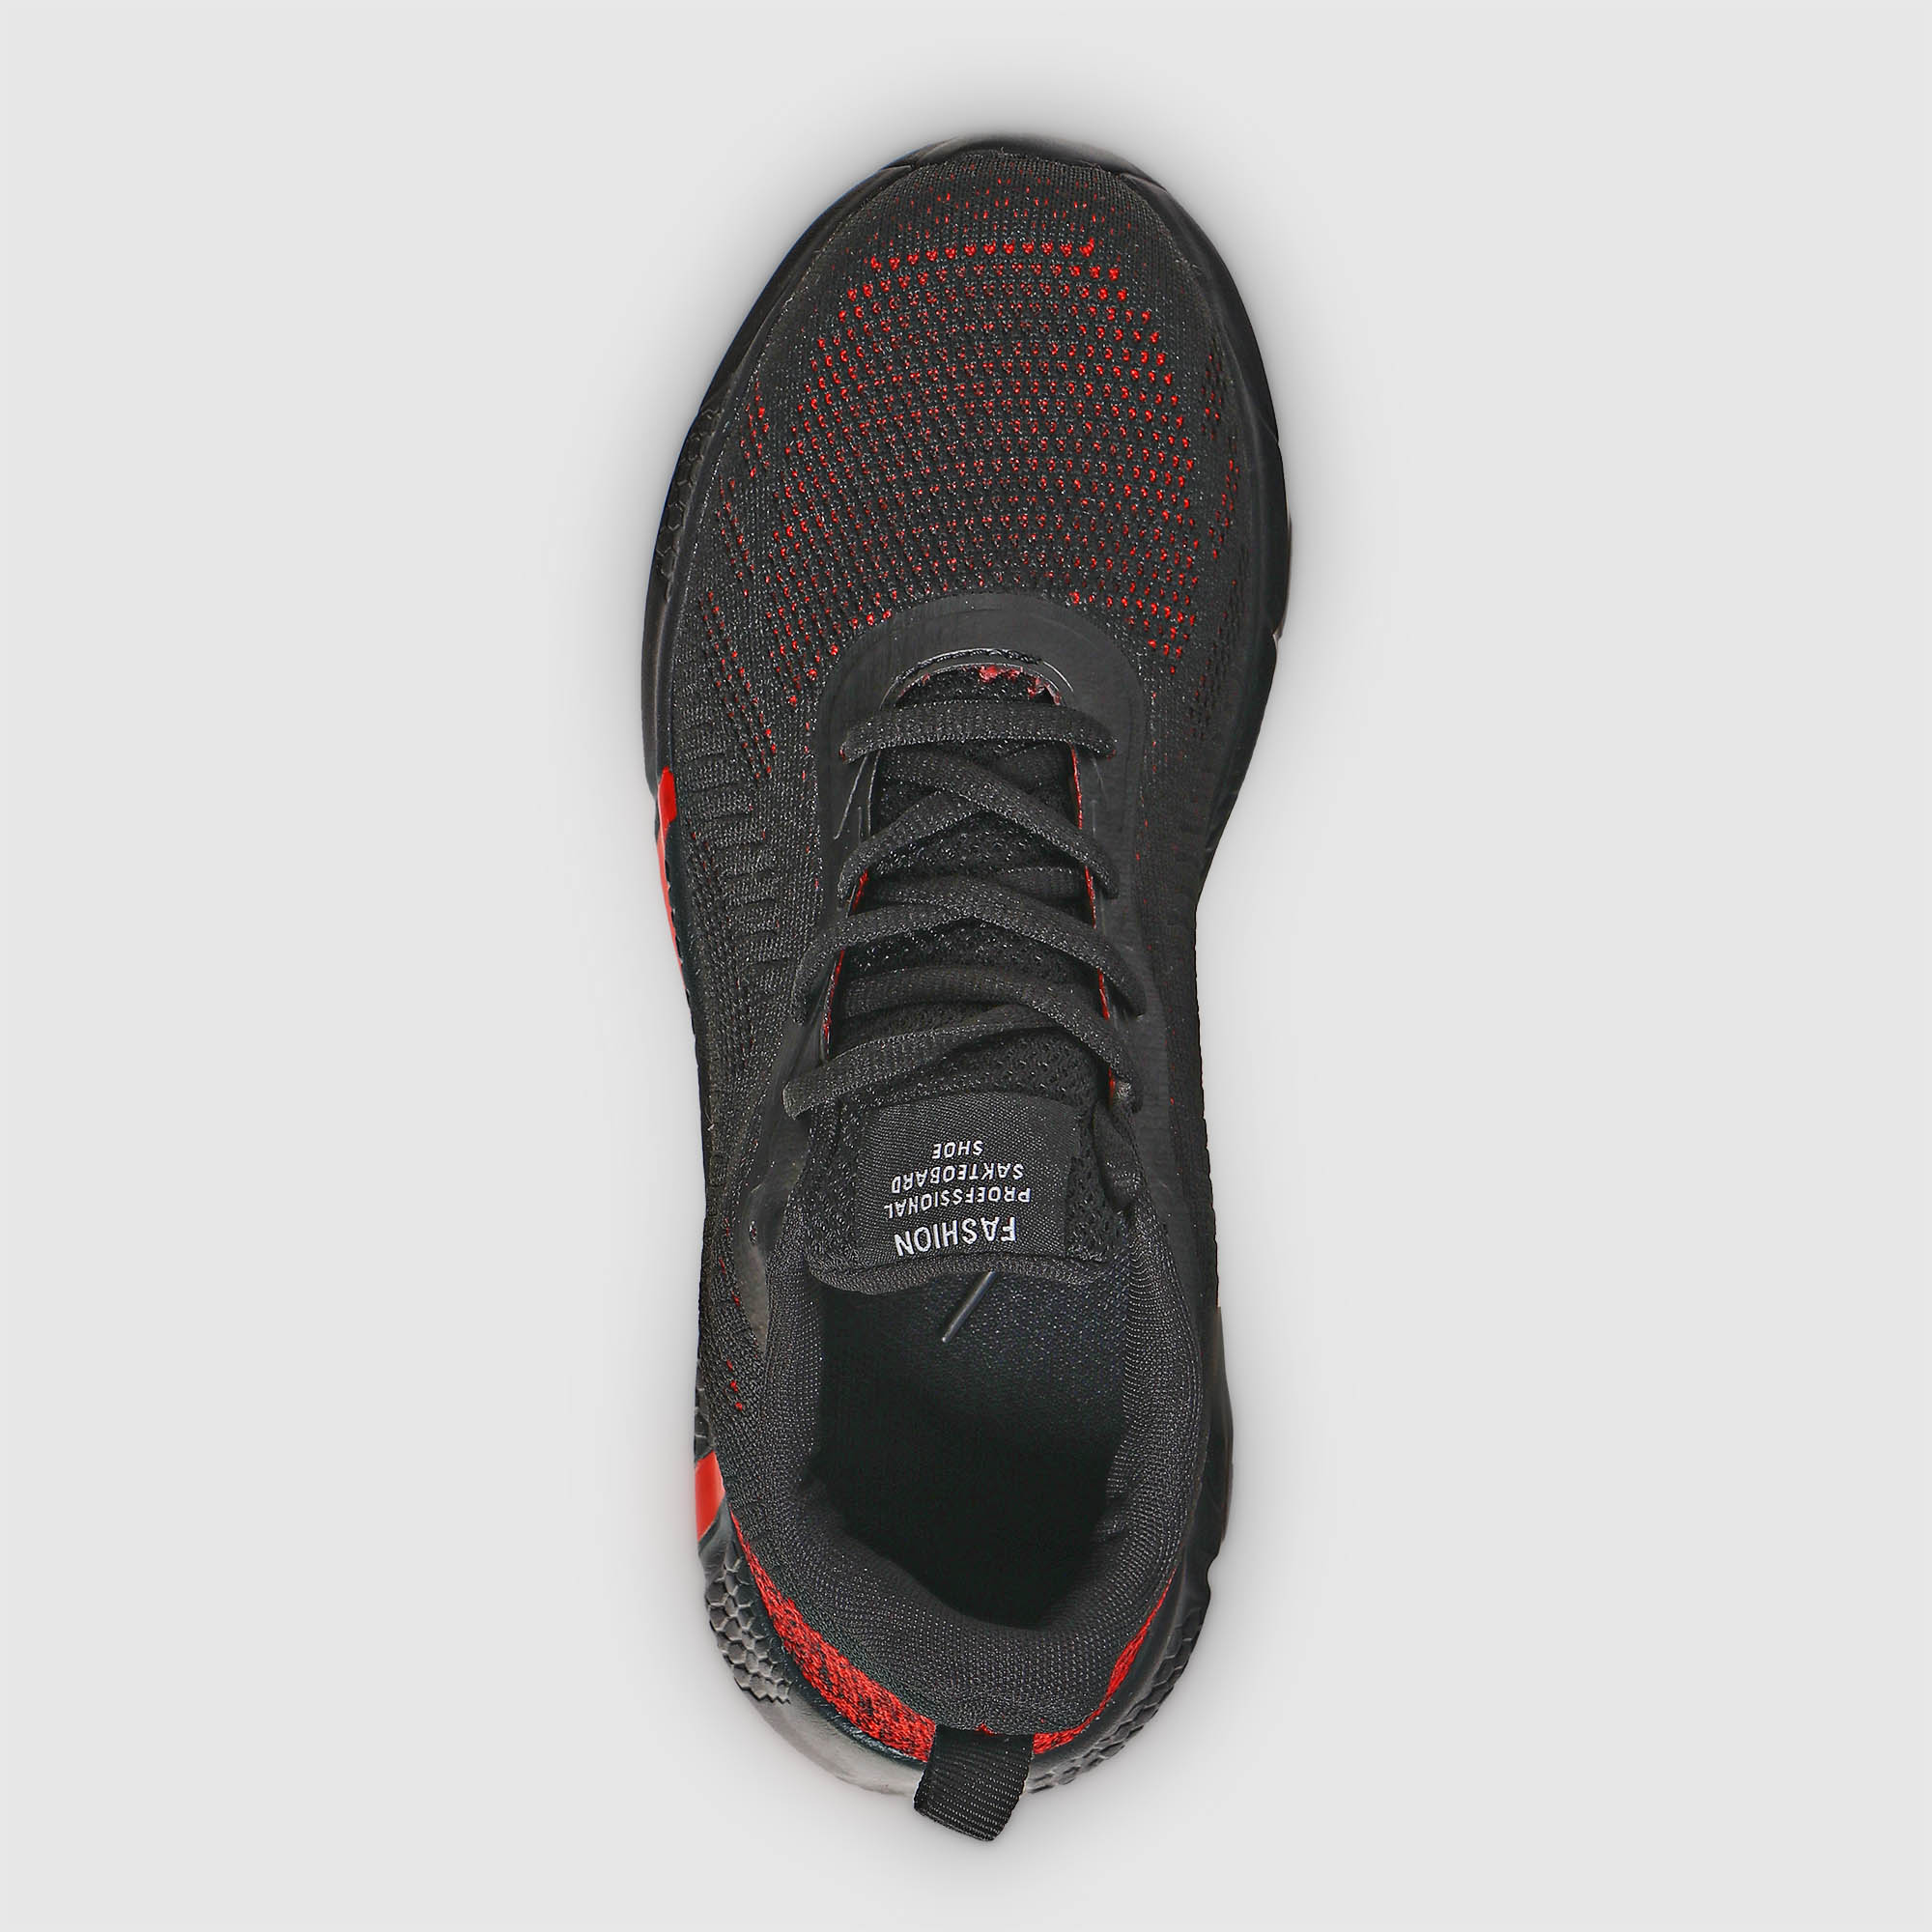 Мужские кроссовки TG Global Красные с чёрным (GT-804), цвет красный, размер 42 - фото 5